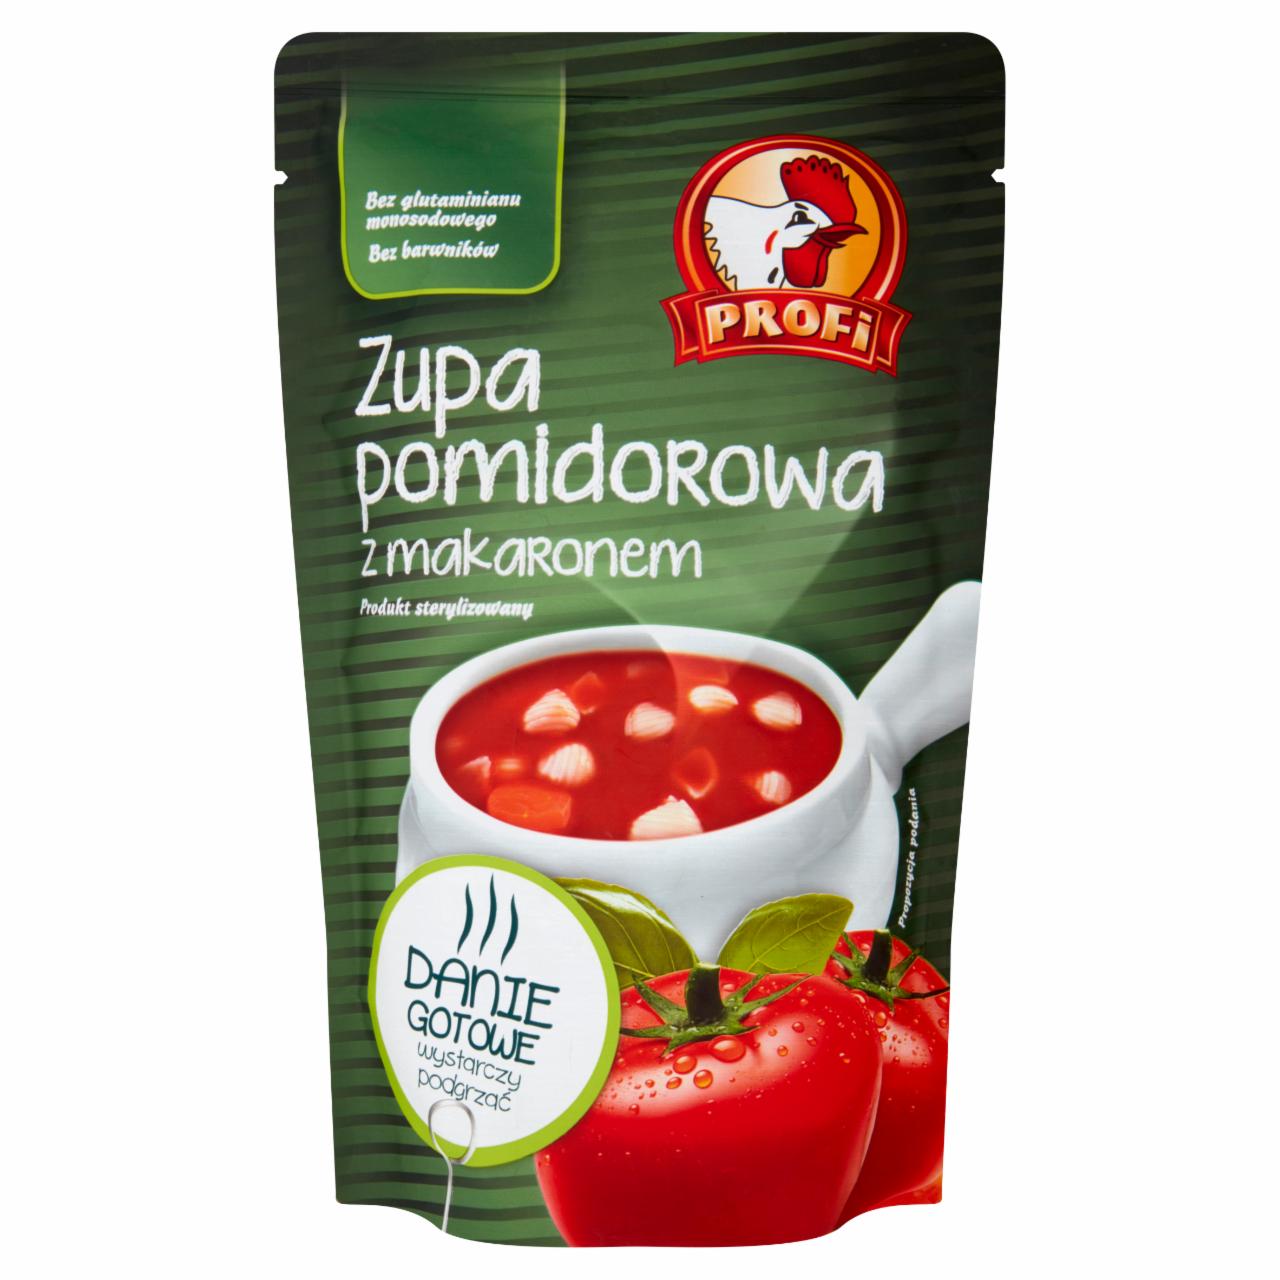 Zdjęcia - Profi Zupa pomidorowa z makaronem 450 g